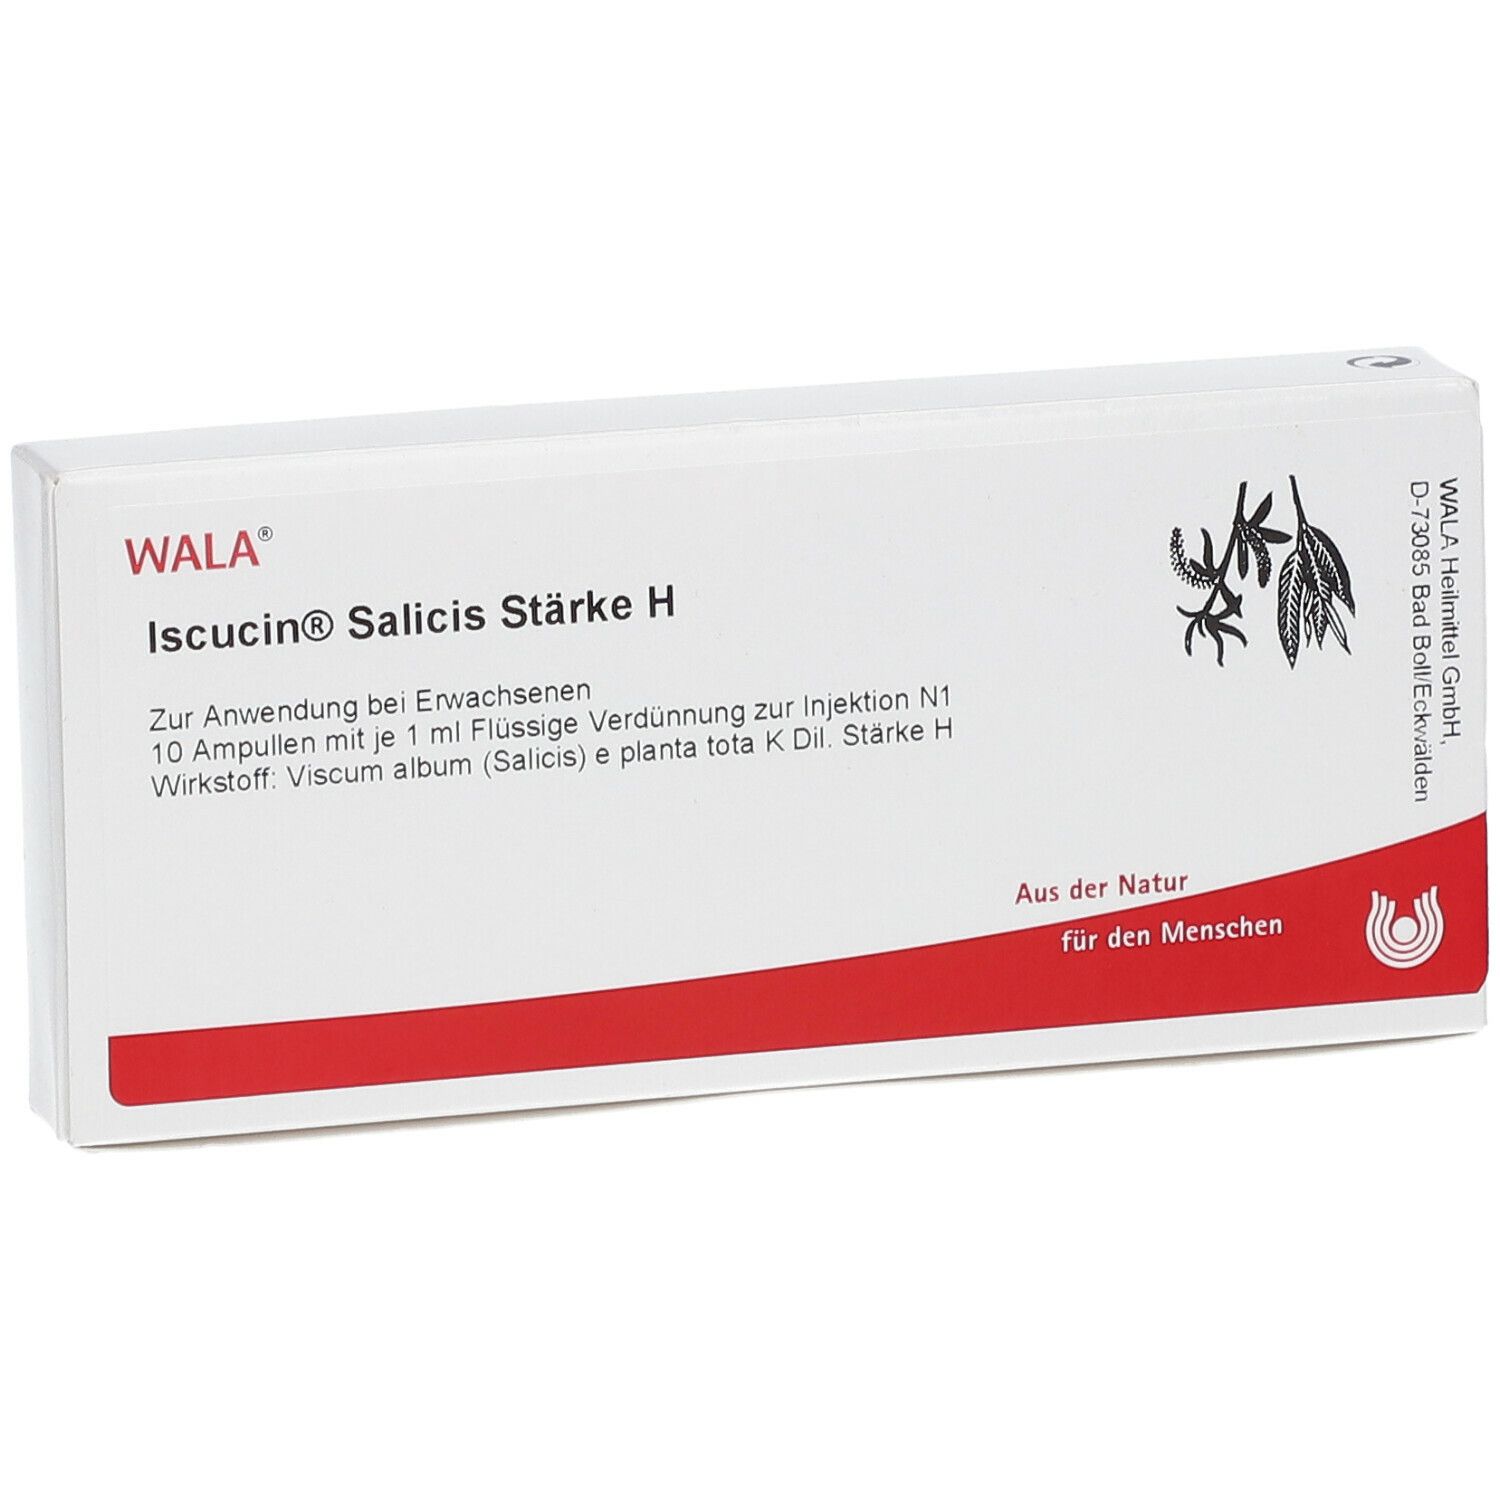 WALA® Iscucin Salicis Stärke H Ampullen